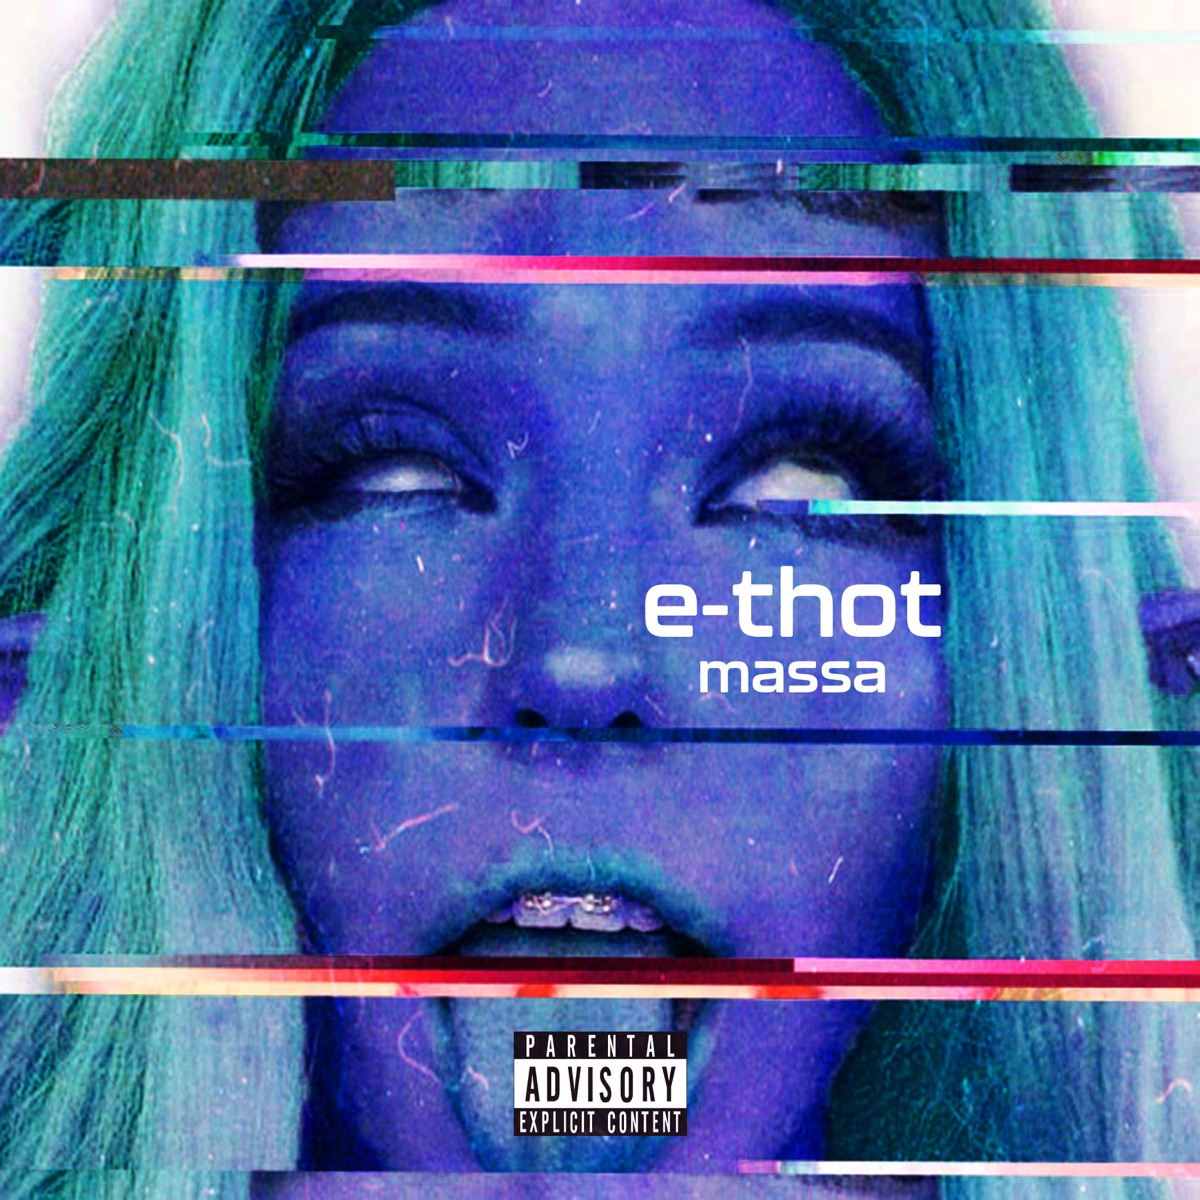 E-thots